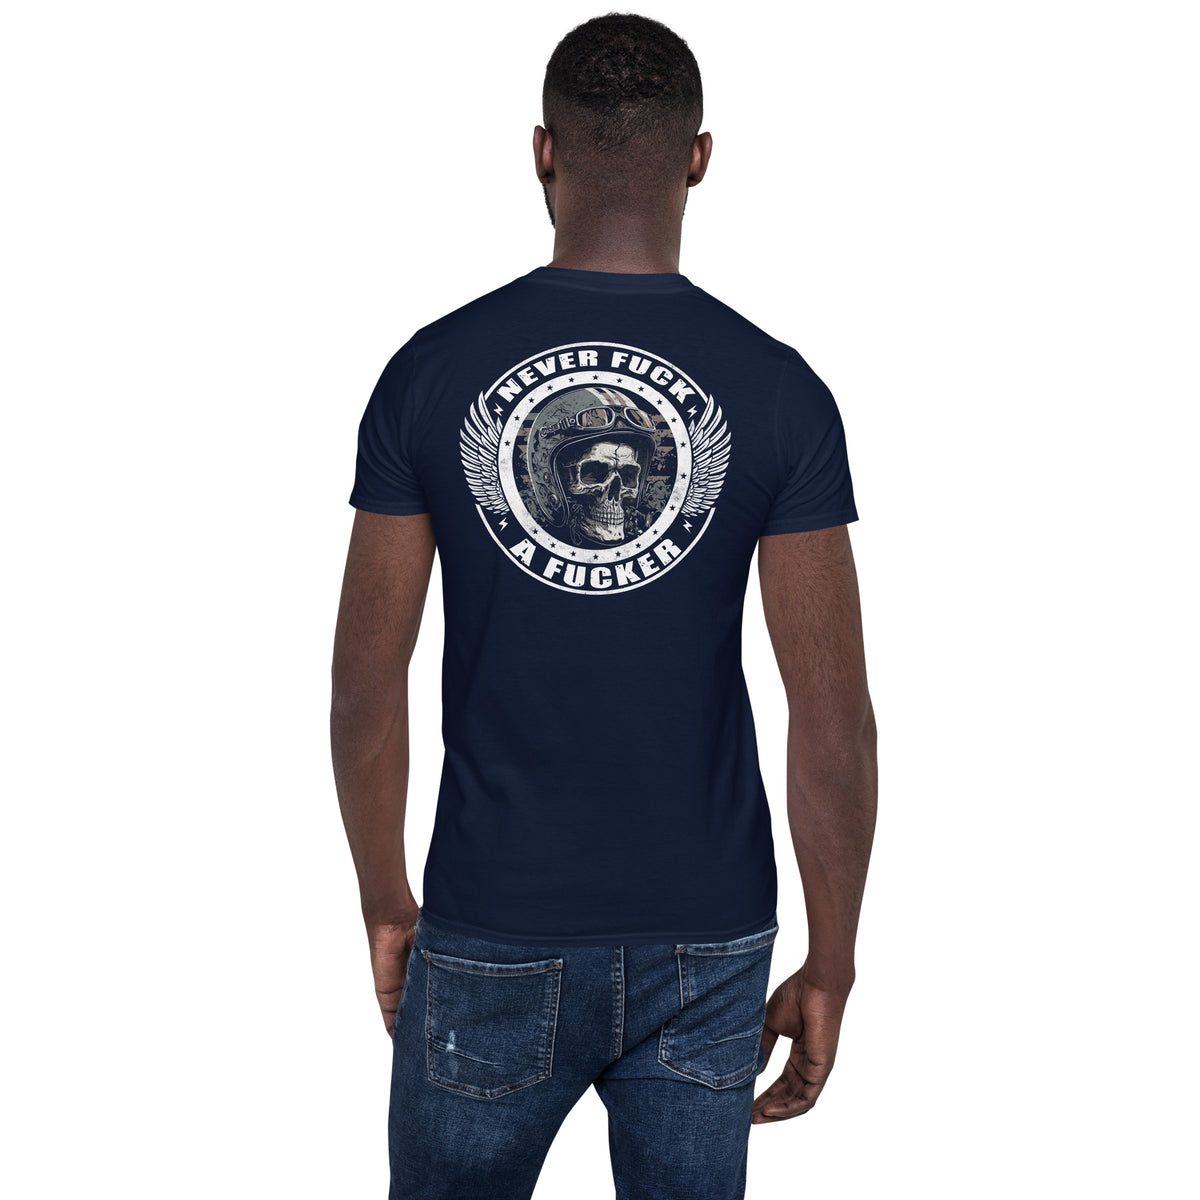 Herren T-Shirt "Never Fuck A Fucker" Variante 6-Biker-Shirts